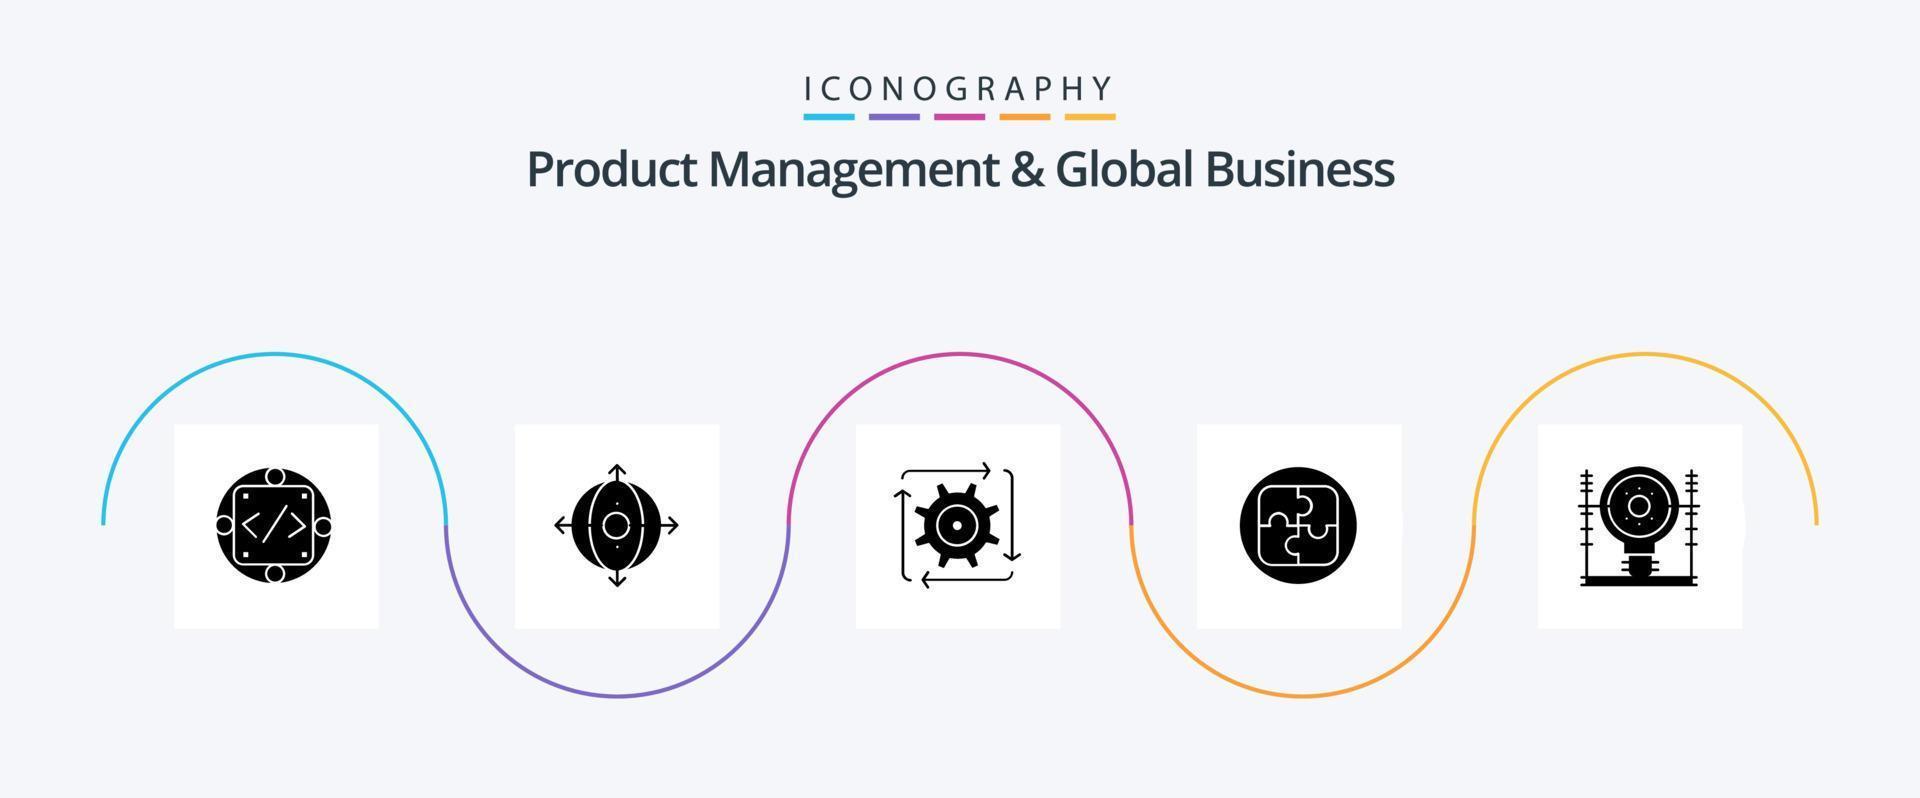 gerenciamento de produtos e pacote de ícones glyph 5 de negócios globais, incluindo solução. plano. produtos. gestão. fluxo vetor